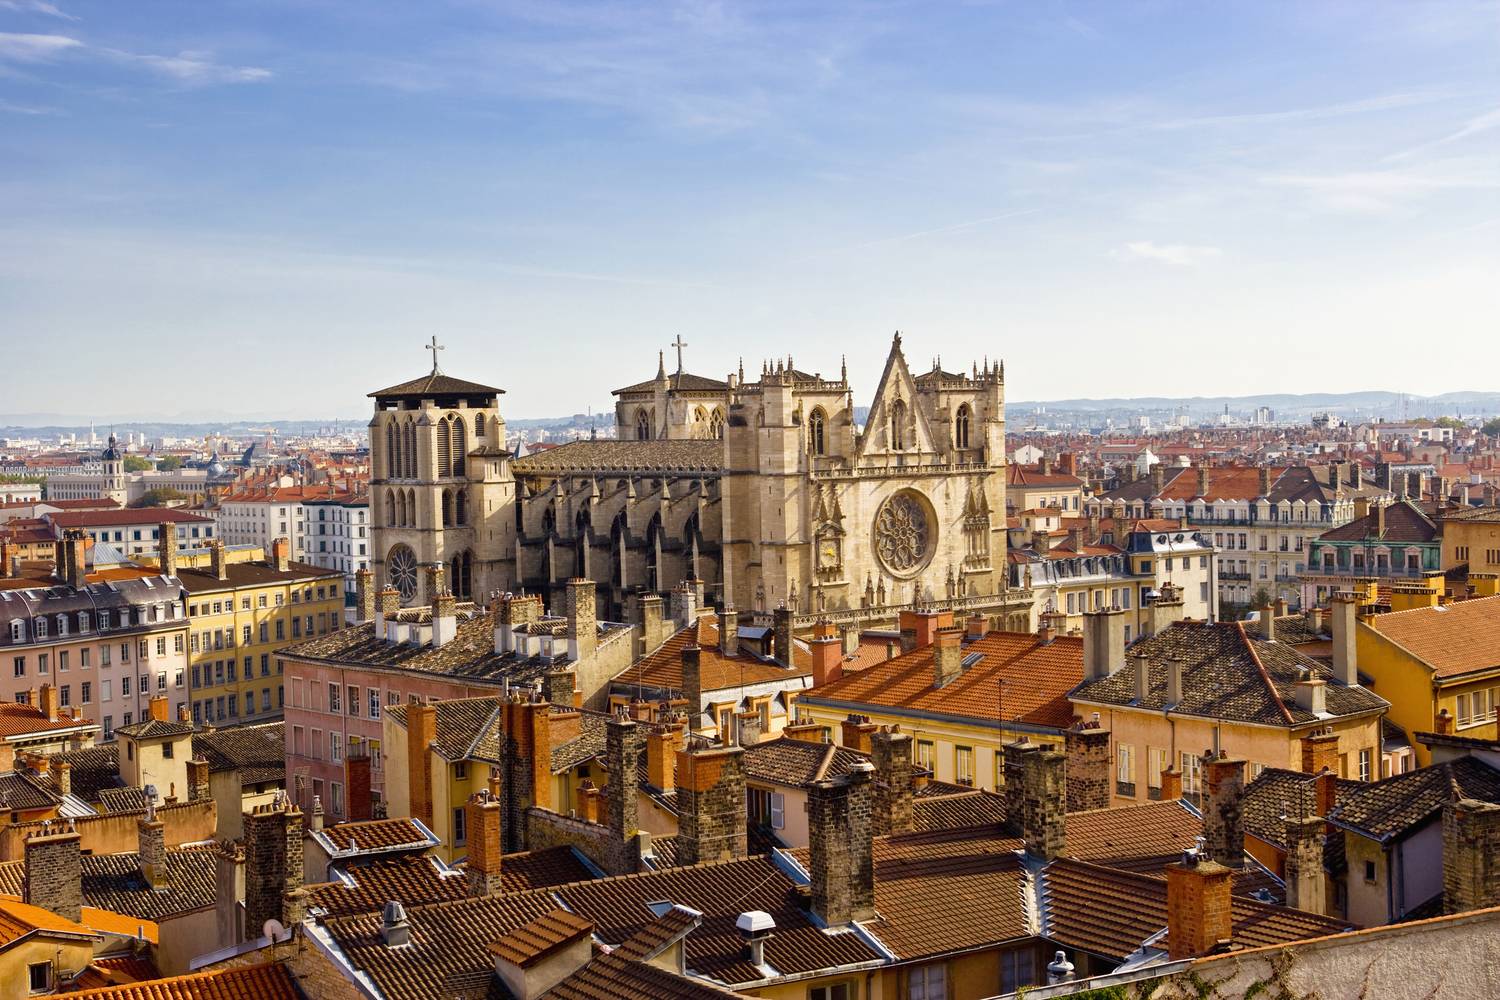 Lyon egyik legszebb látnivalója az 1400-as évekre elkészült, gótikus stílusú székesegyháza, mely már messziről magasztos látvány.